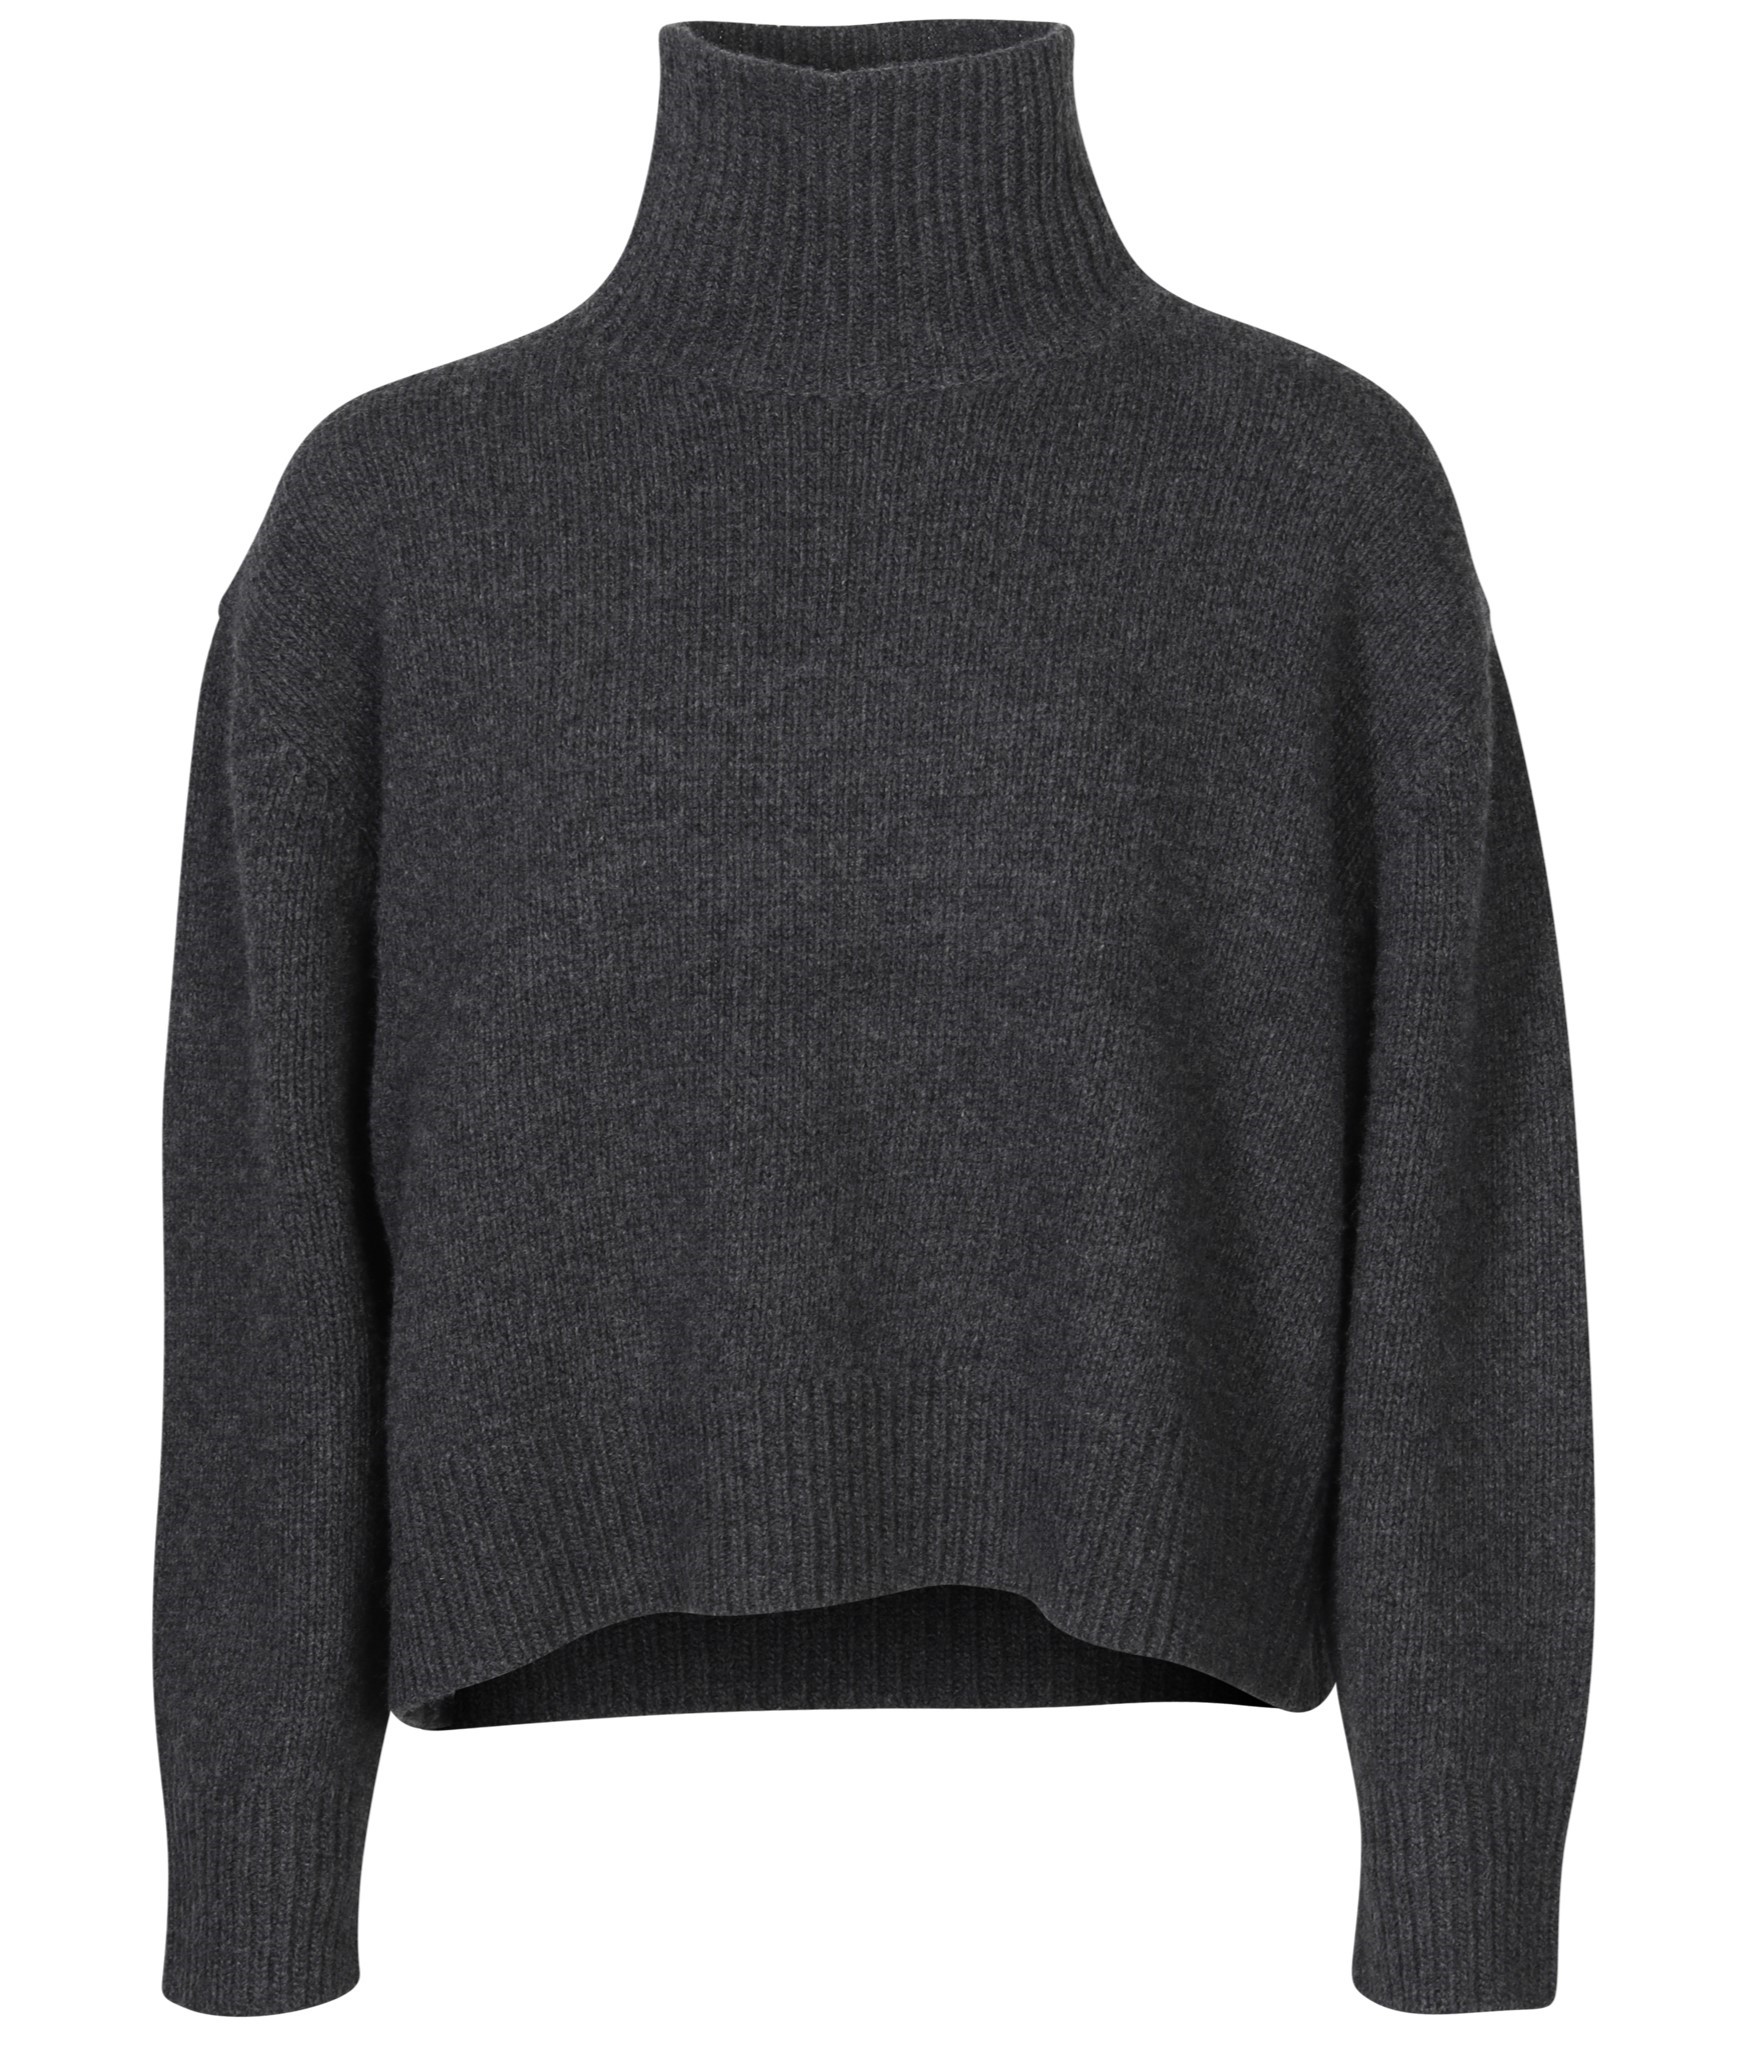 NILI LOTAN Omaira Knit Turtleneck Sweater in Dark Charcoal Melange M